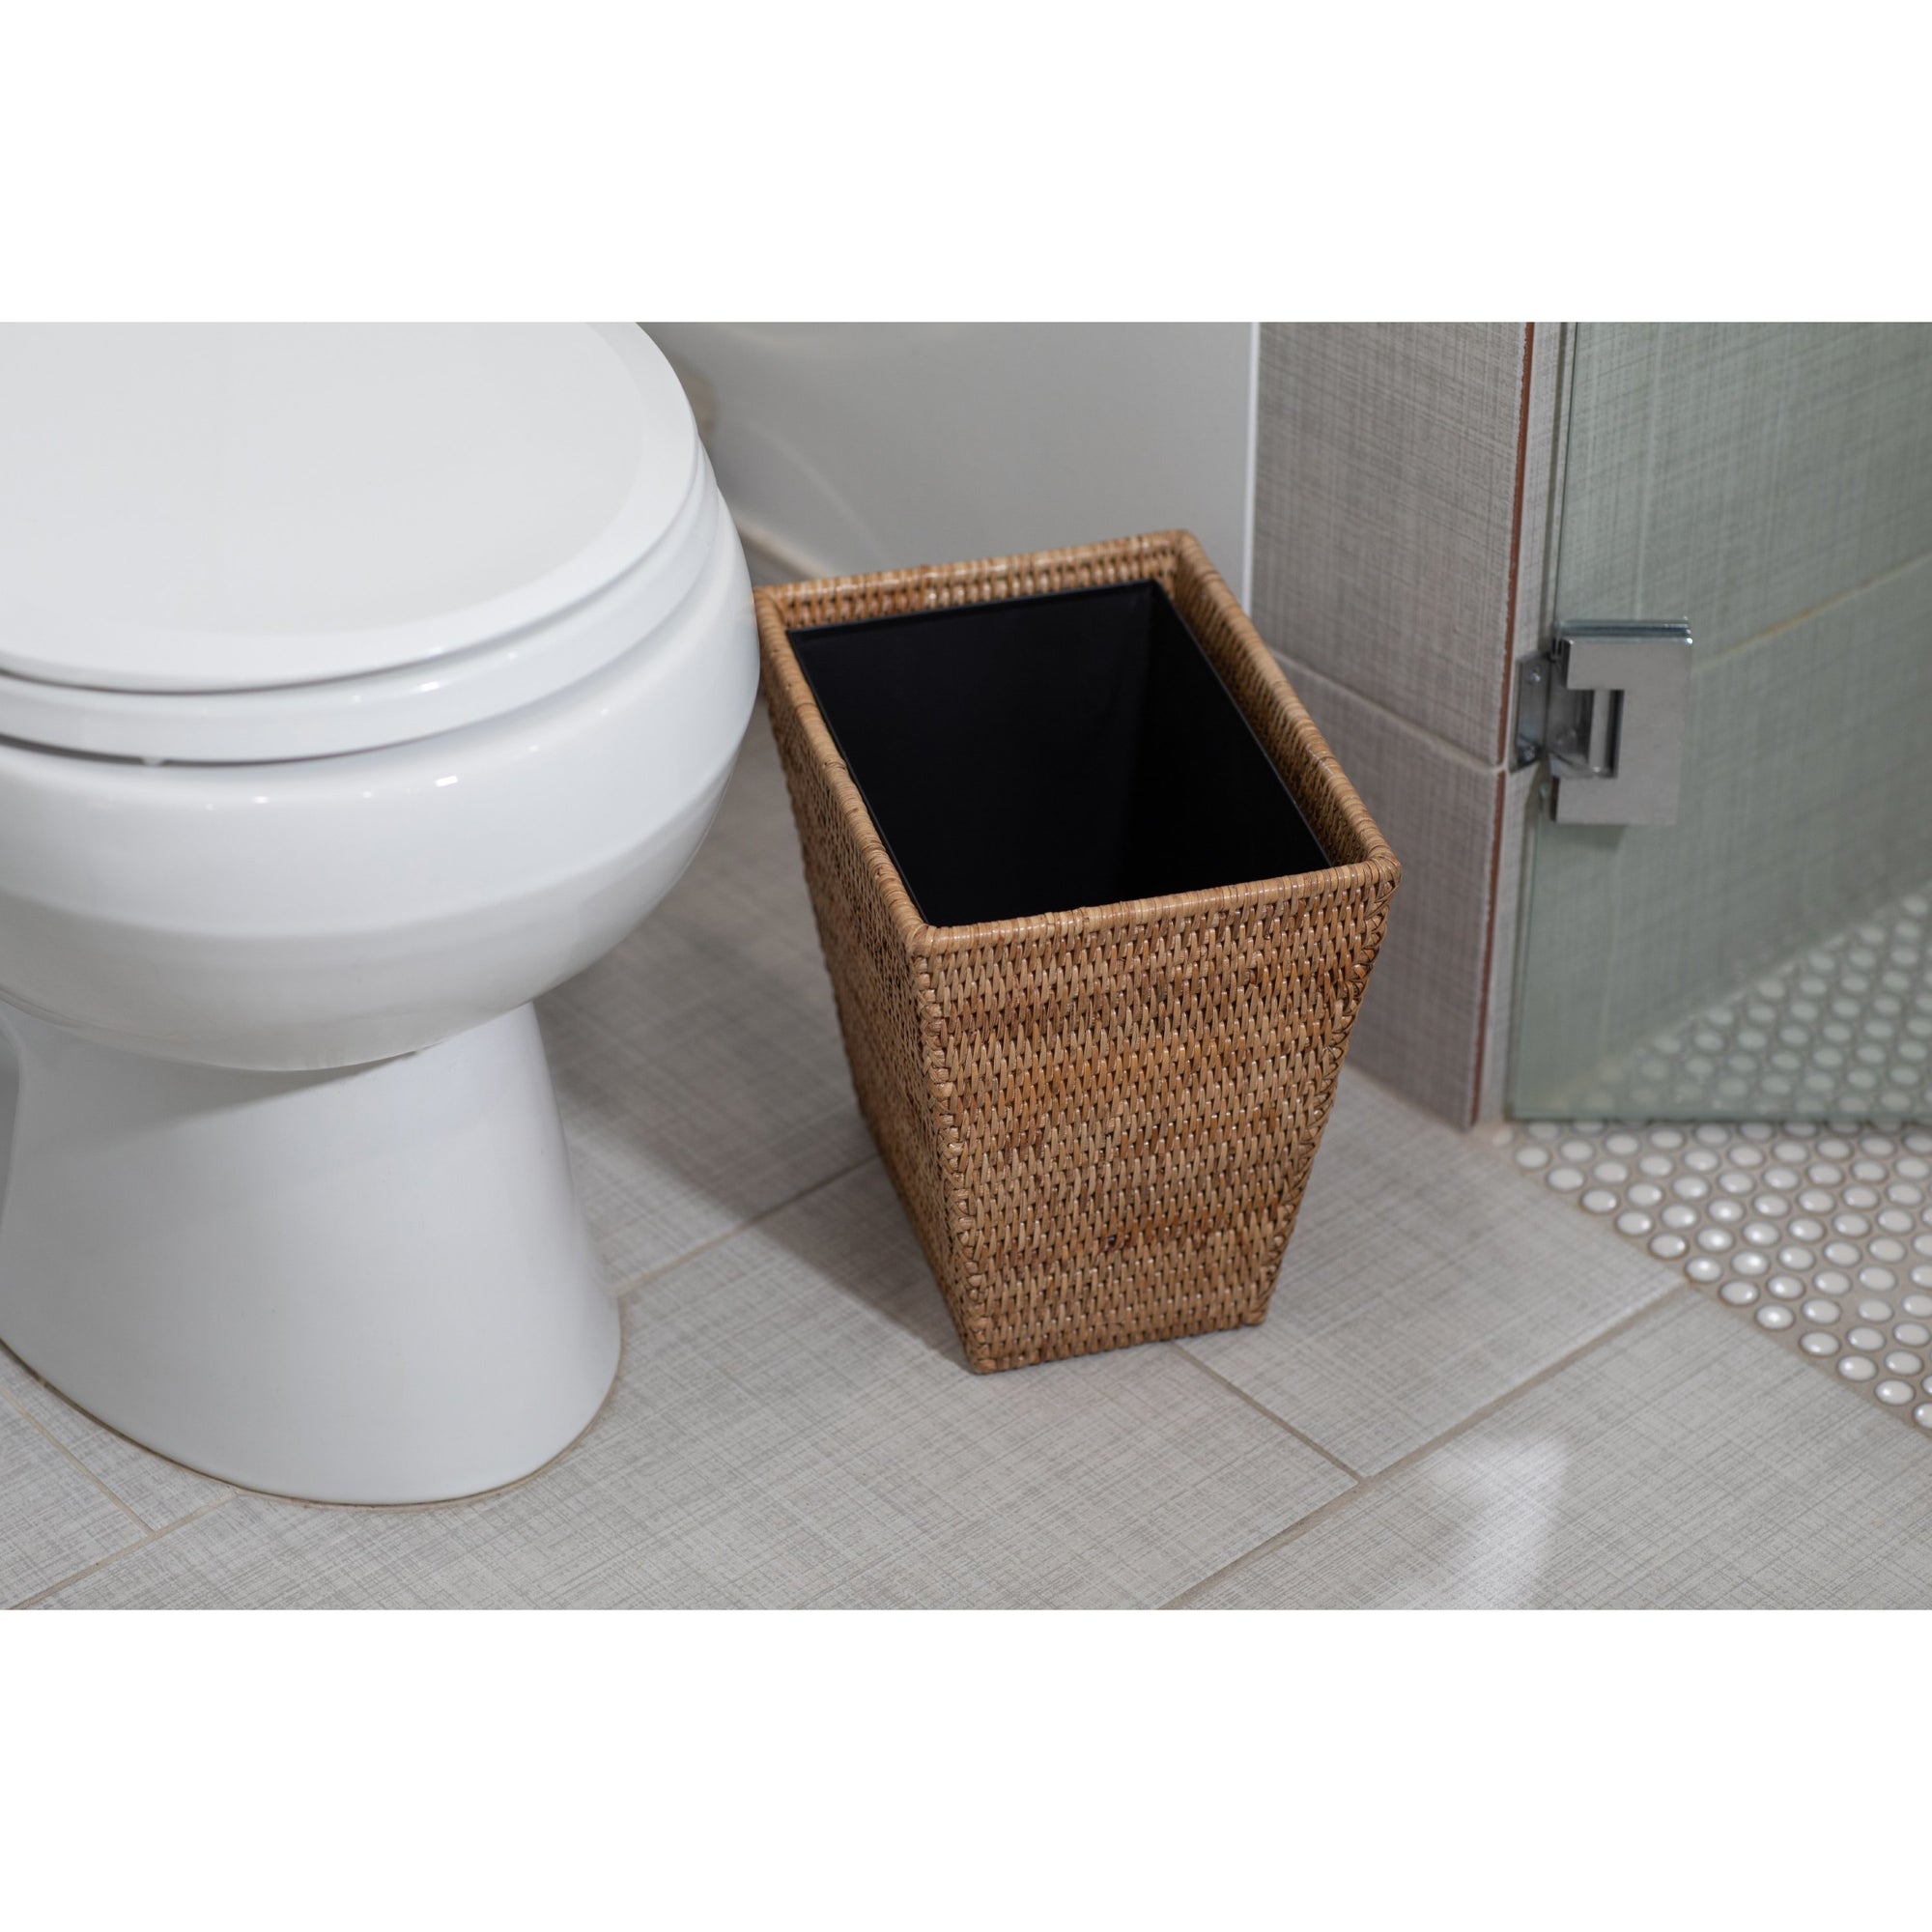 Straight Wastebasket Liner, Designer Bathroom